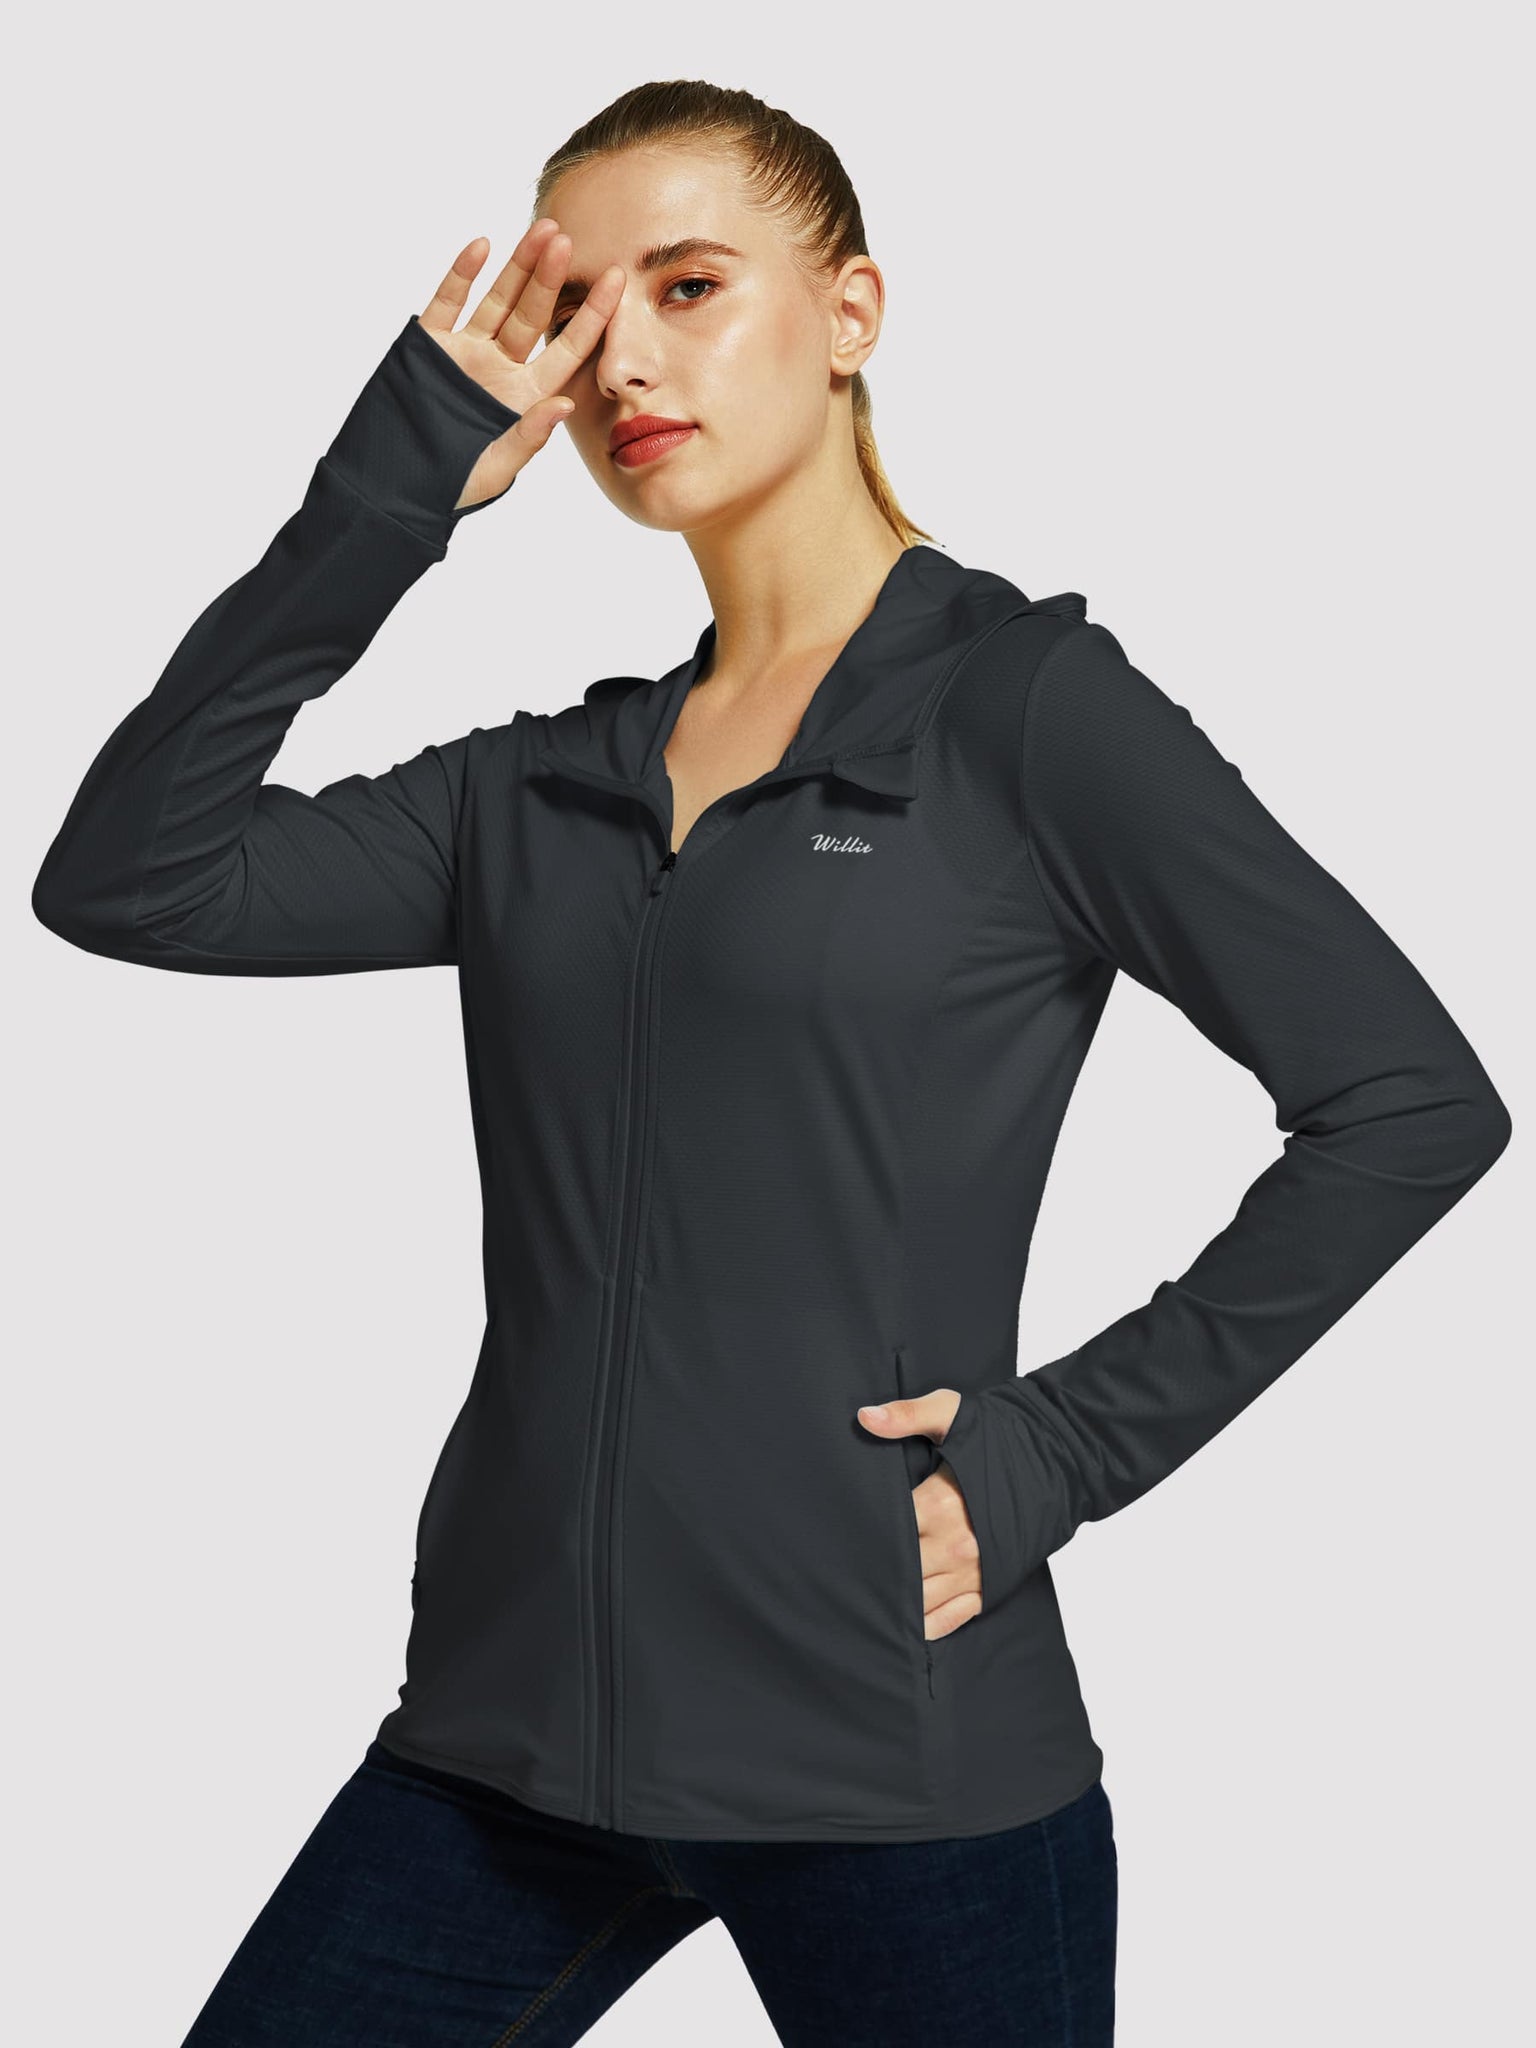 Willit Women's Outdoor Sun Protection Jacket Full Zip_Black_model2